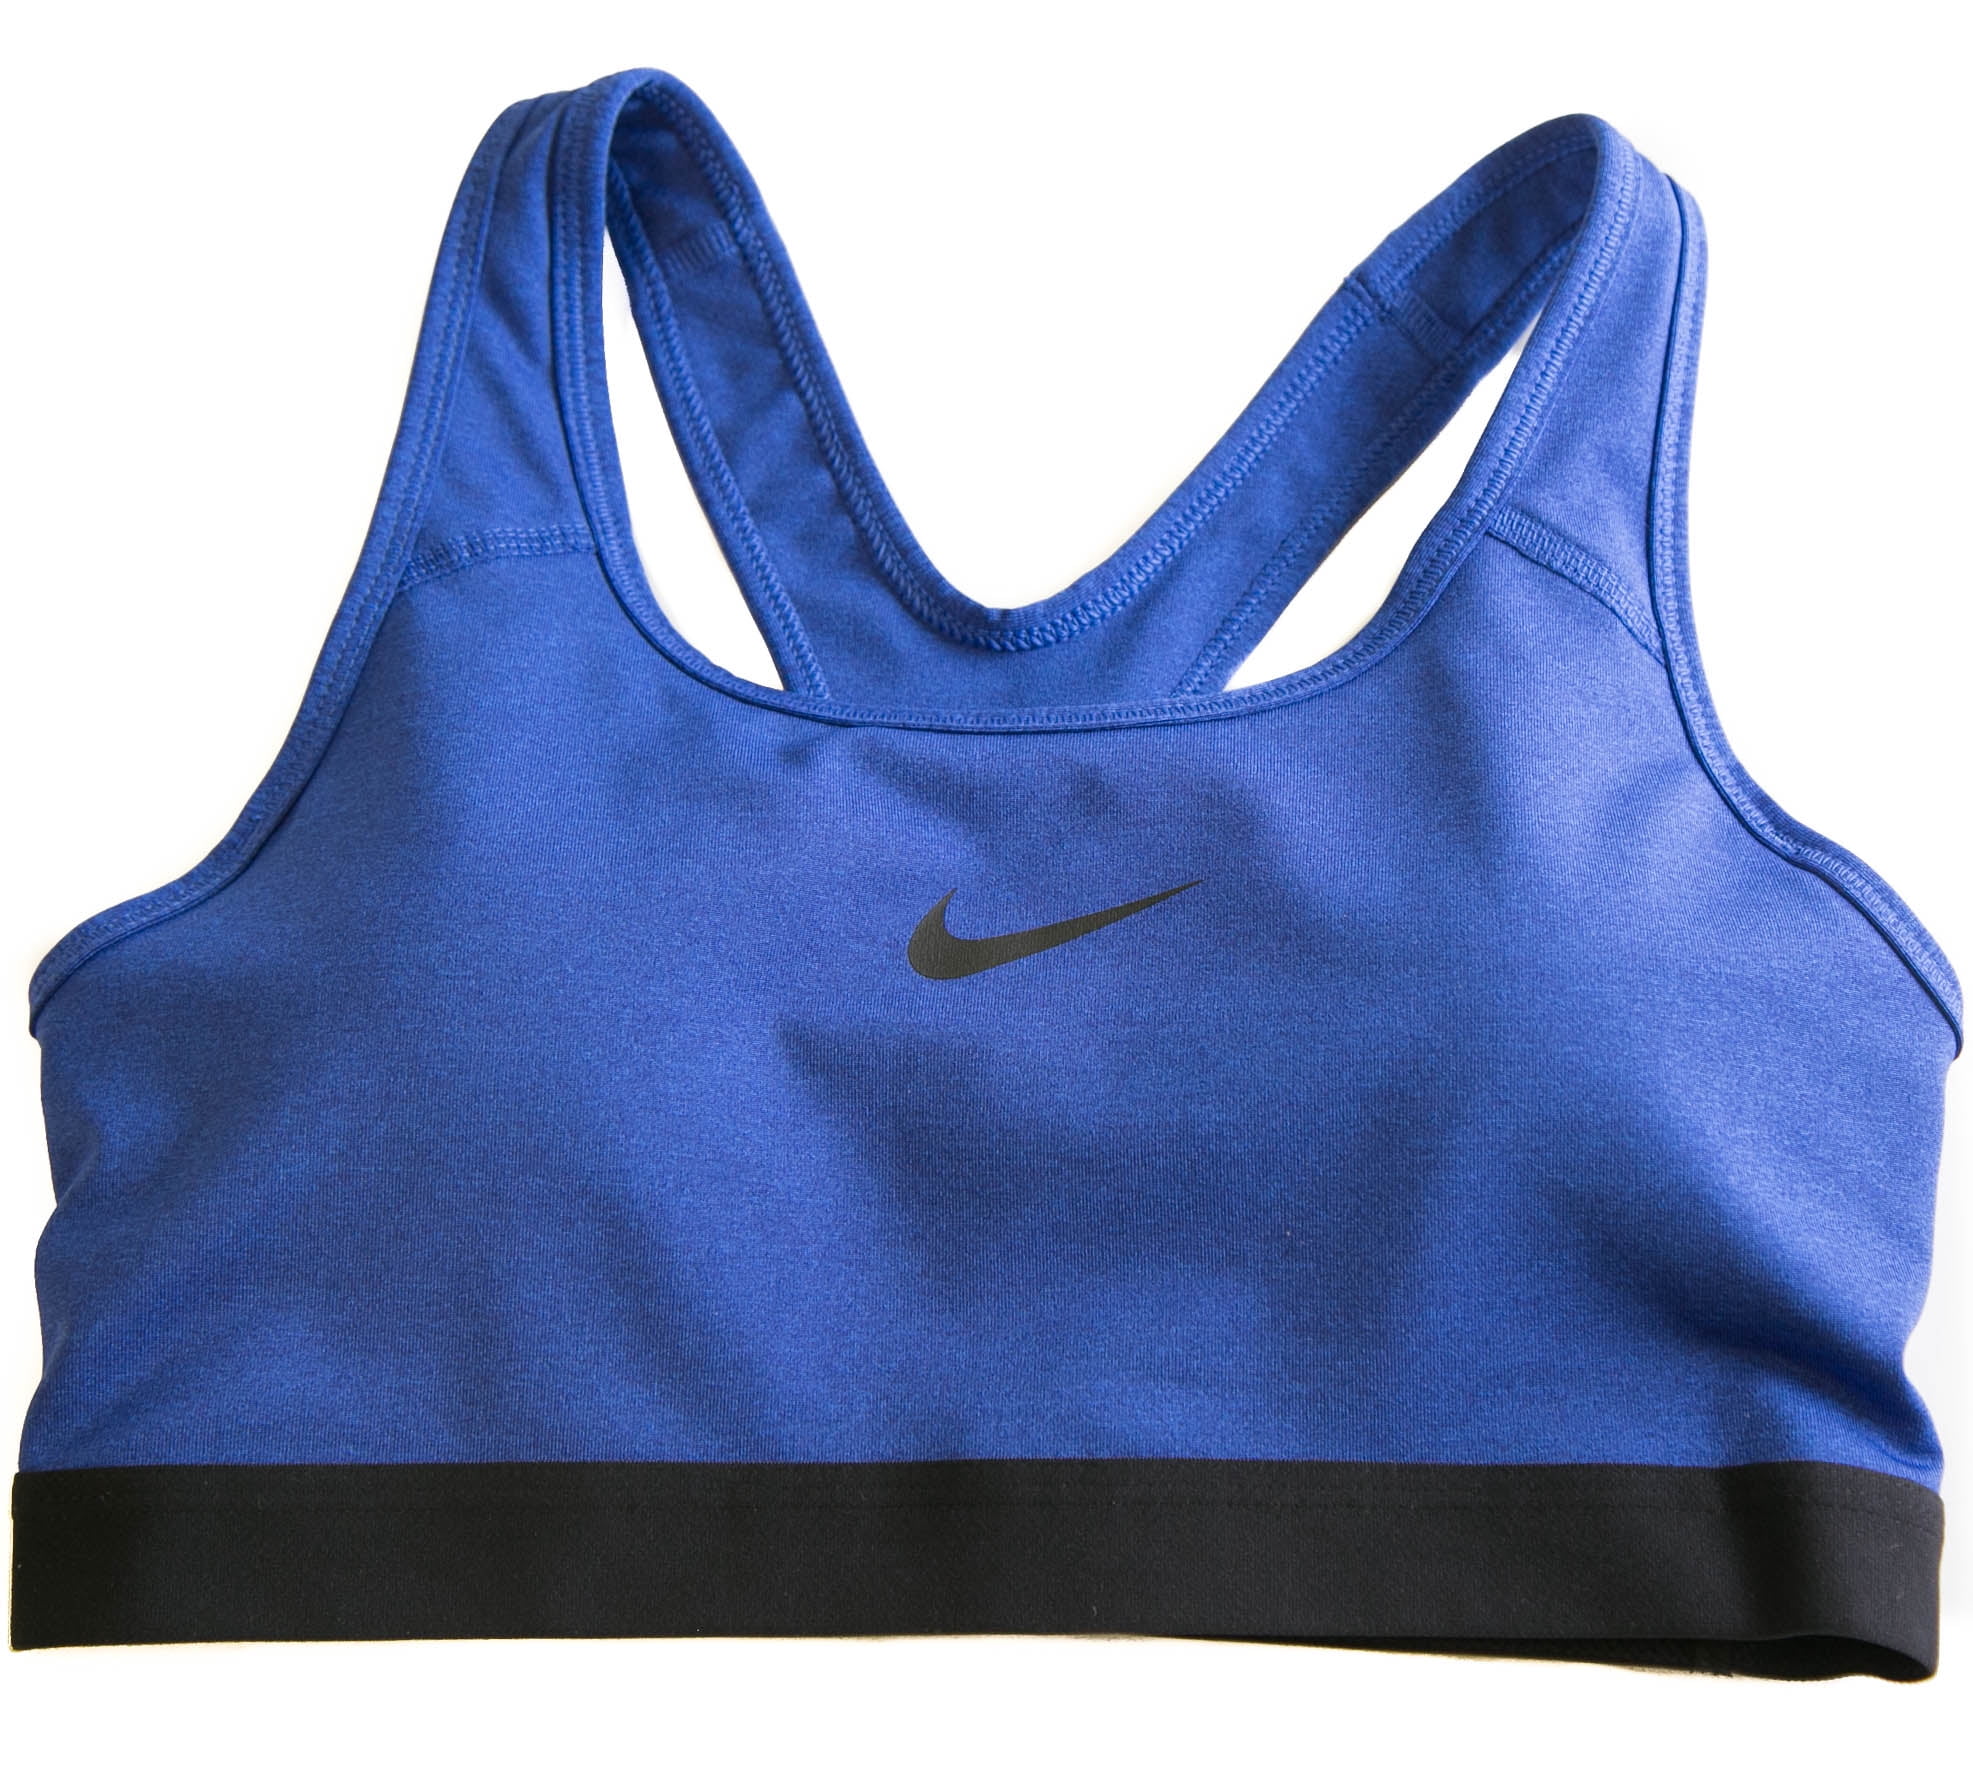 Nike Women's DRI-FIT Running/Training Sports Bra - Walmart.com